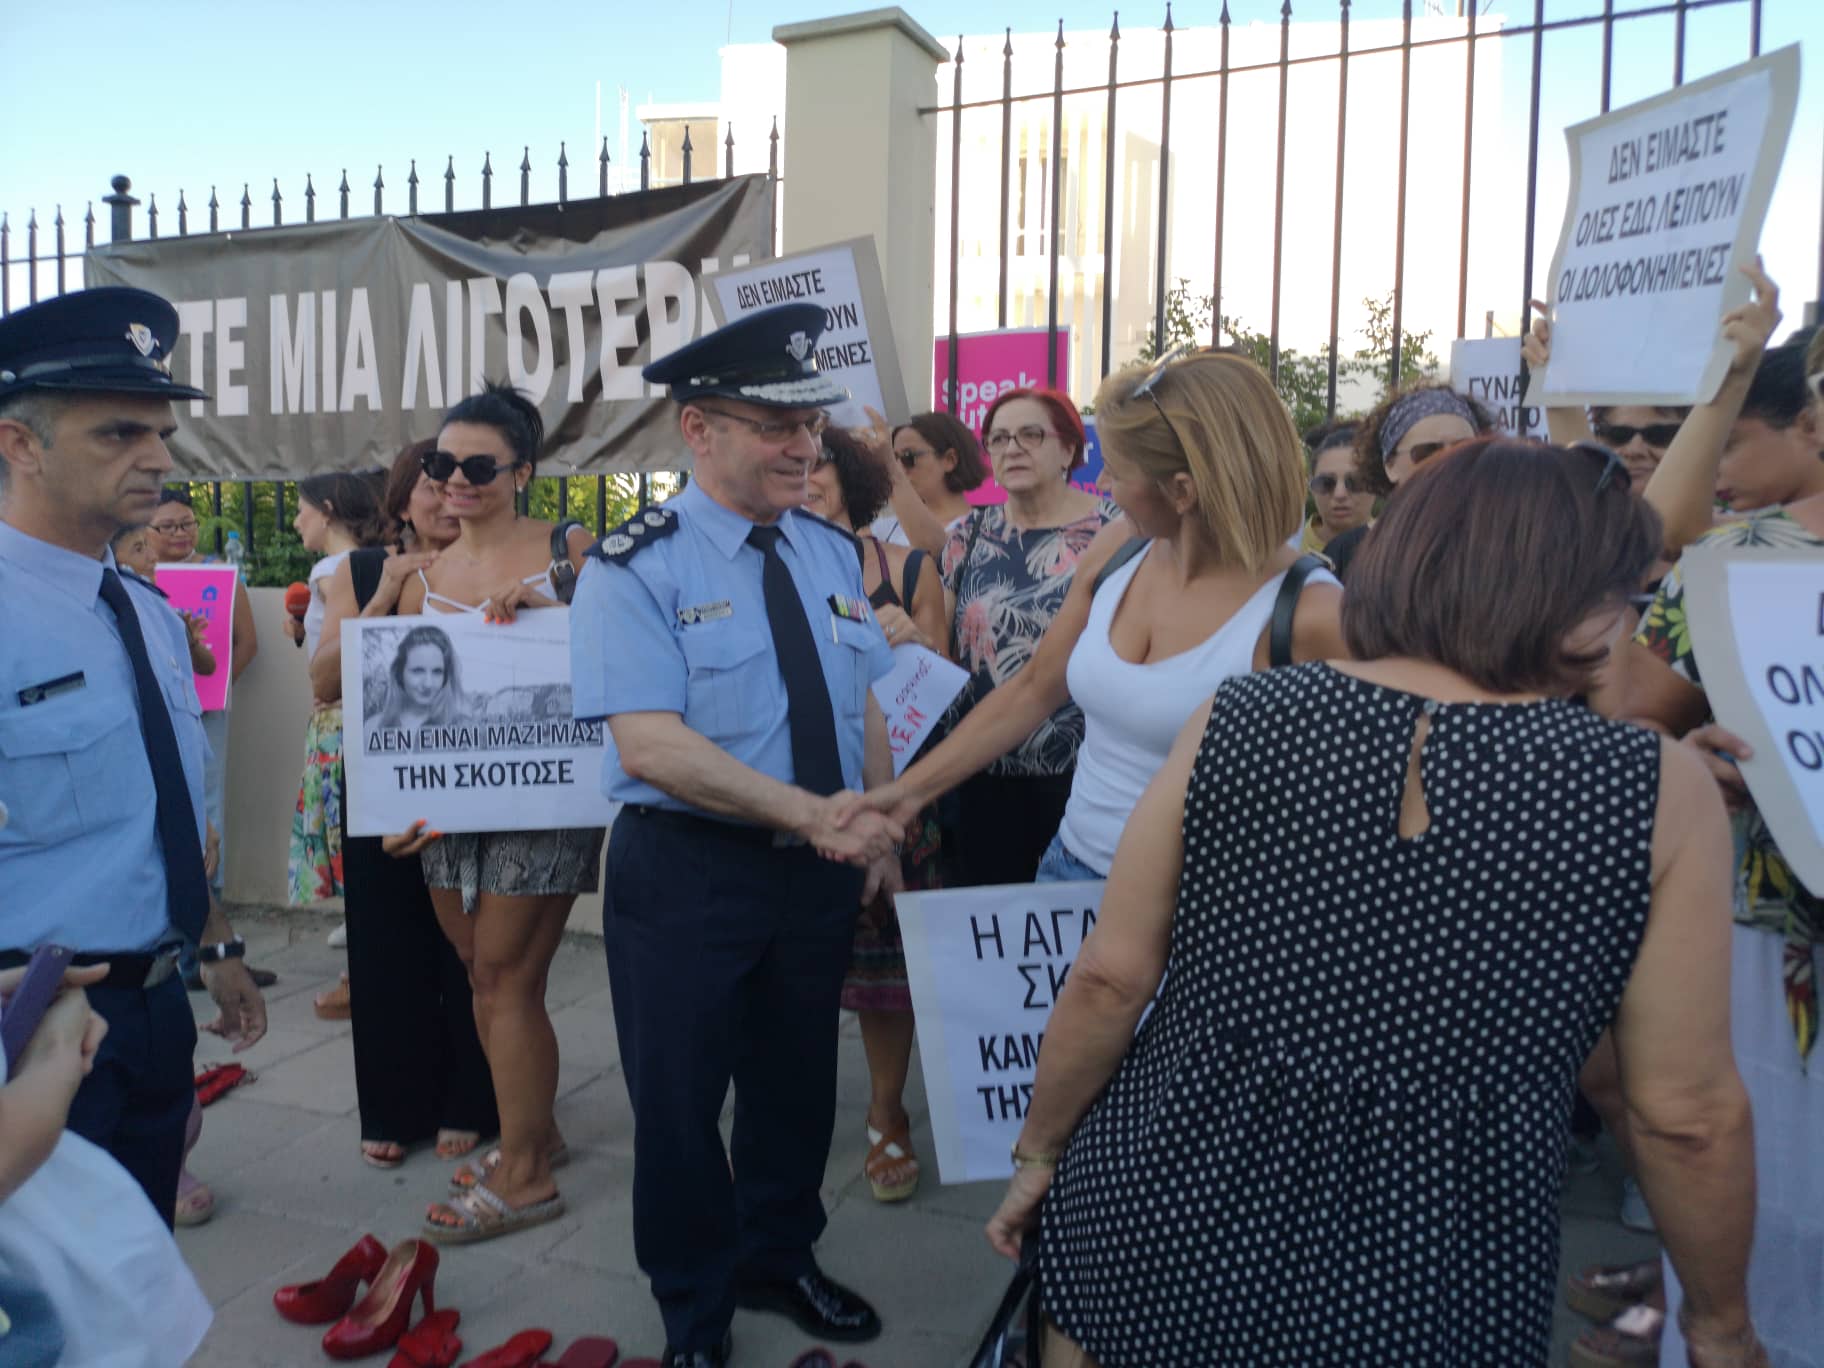 ο Κύπρος Μιχαηλίδης, διαβεβαίωσε ότι η Αστυνομία προσπαθεί πάντα να προστατέψει τις ευάλωτες ομάδες, όπως είναι οι γυναίκες. Κάλεσε επίσης τους διοργανωτές να δώσουν εισηγήσεις στην Αστυνομία, ώστε να ληφθούν μέτρα για την προστασία των γυναικών και οποιασδήποτε άλλης ευάλωτης ομάδας πολιτών.